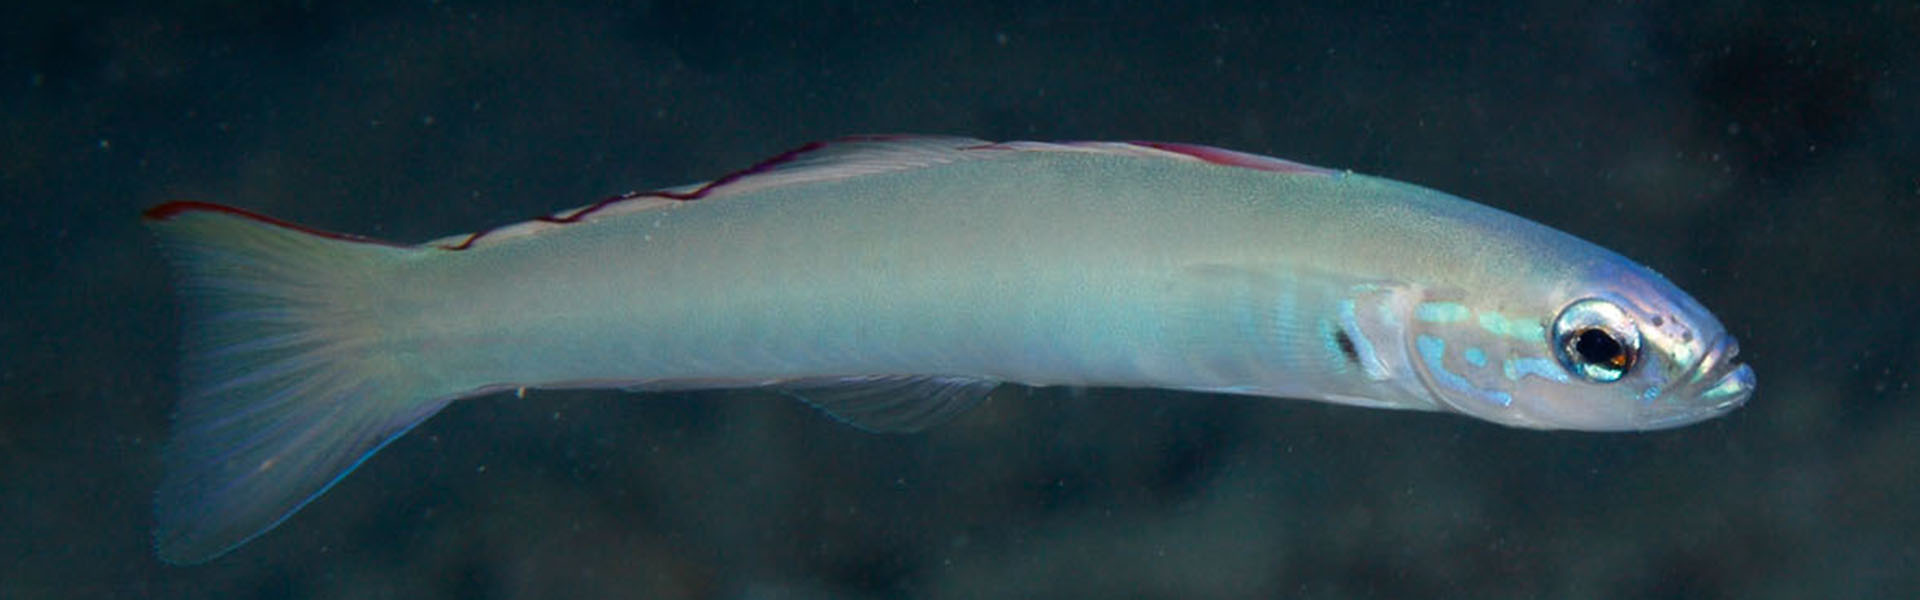 The Smallscale Dartfish